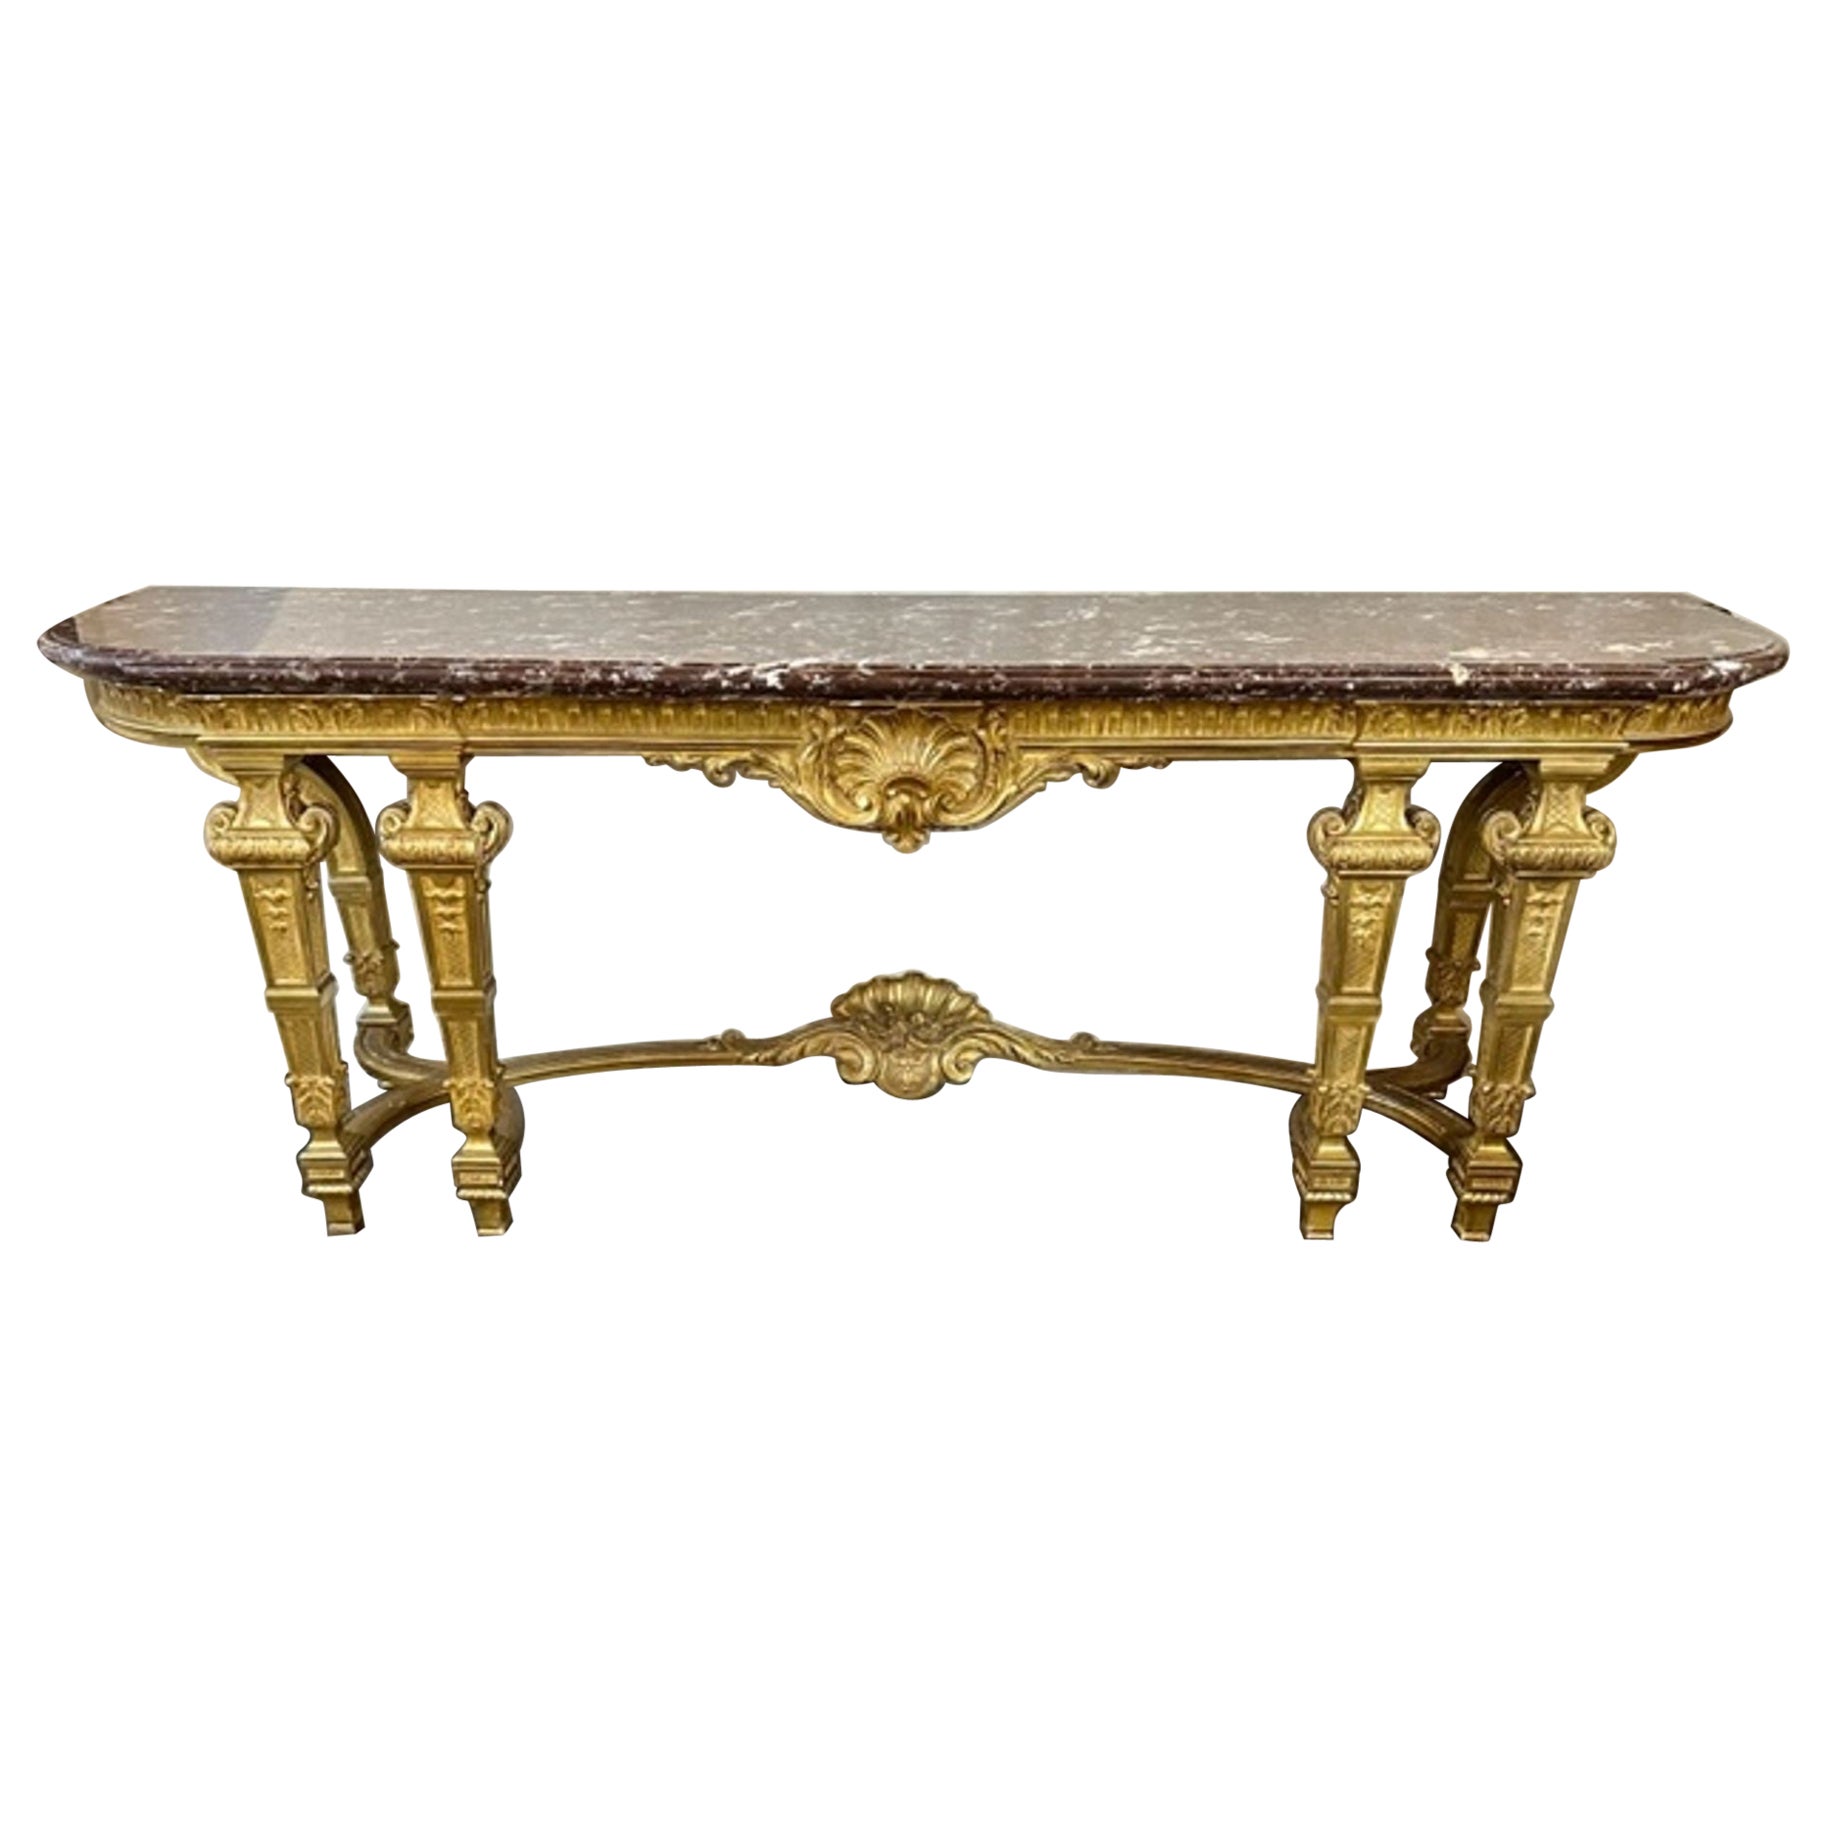 Console en bois doré à grande échelle de style Louis XVI du 19ème siècle français